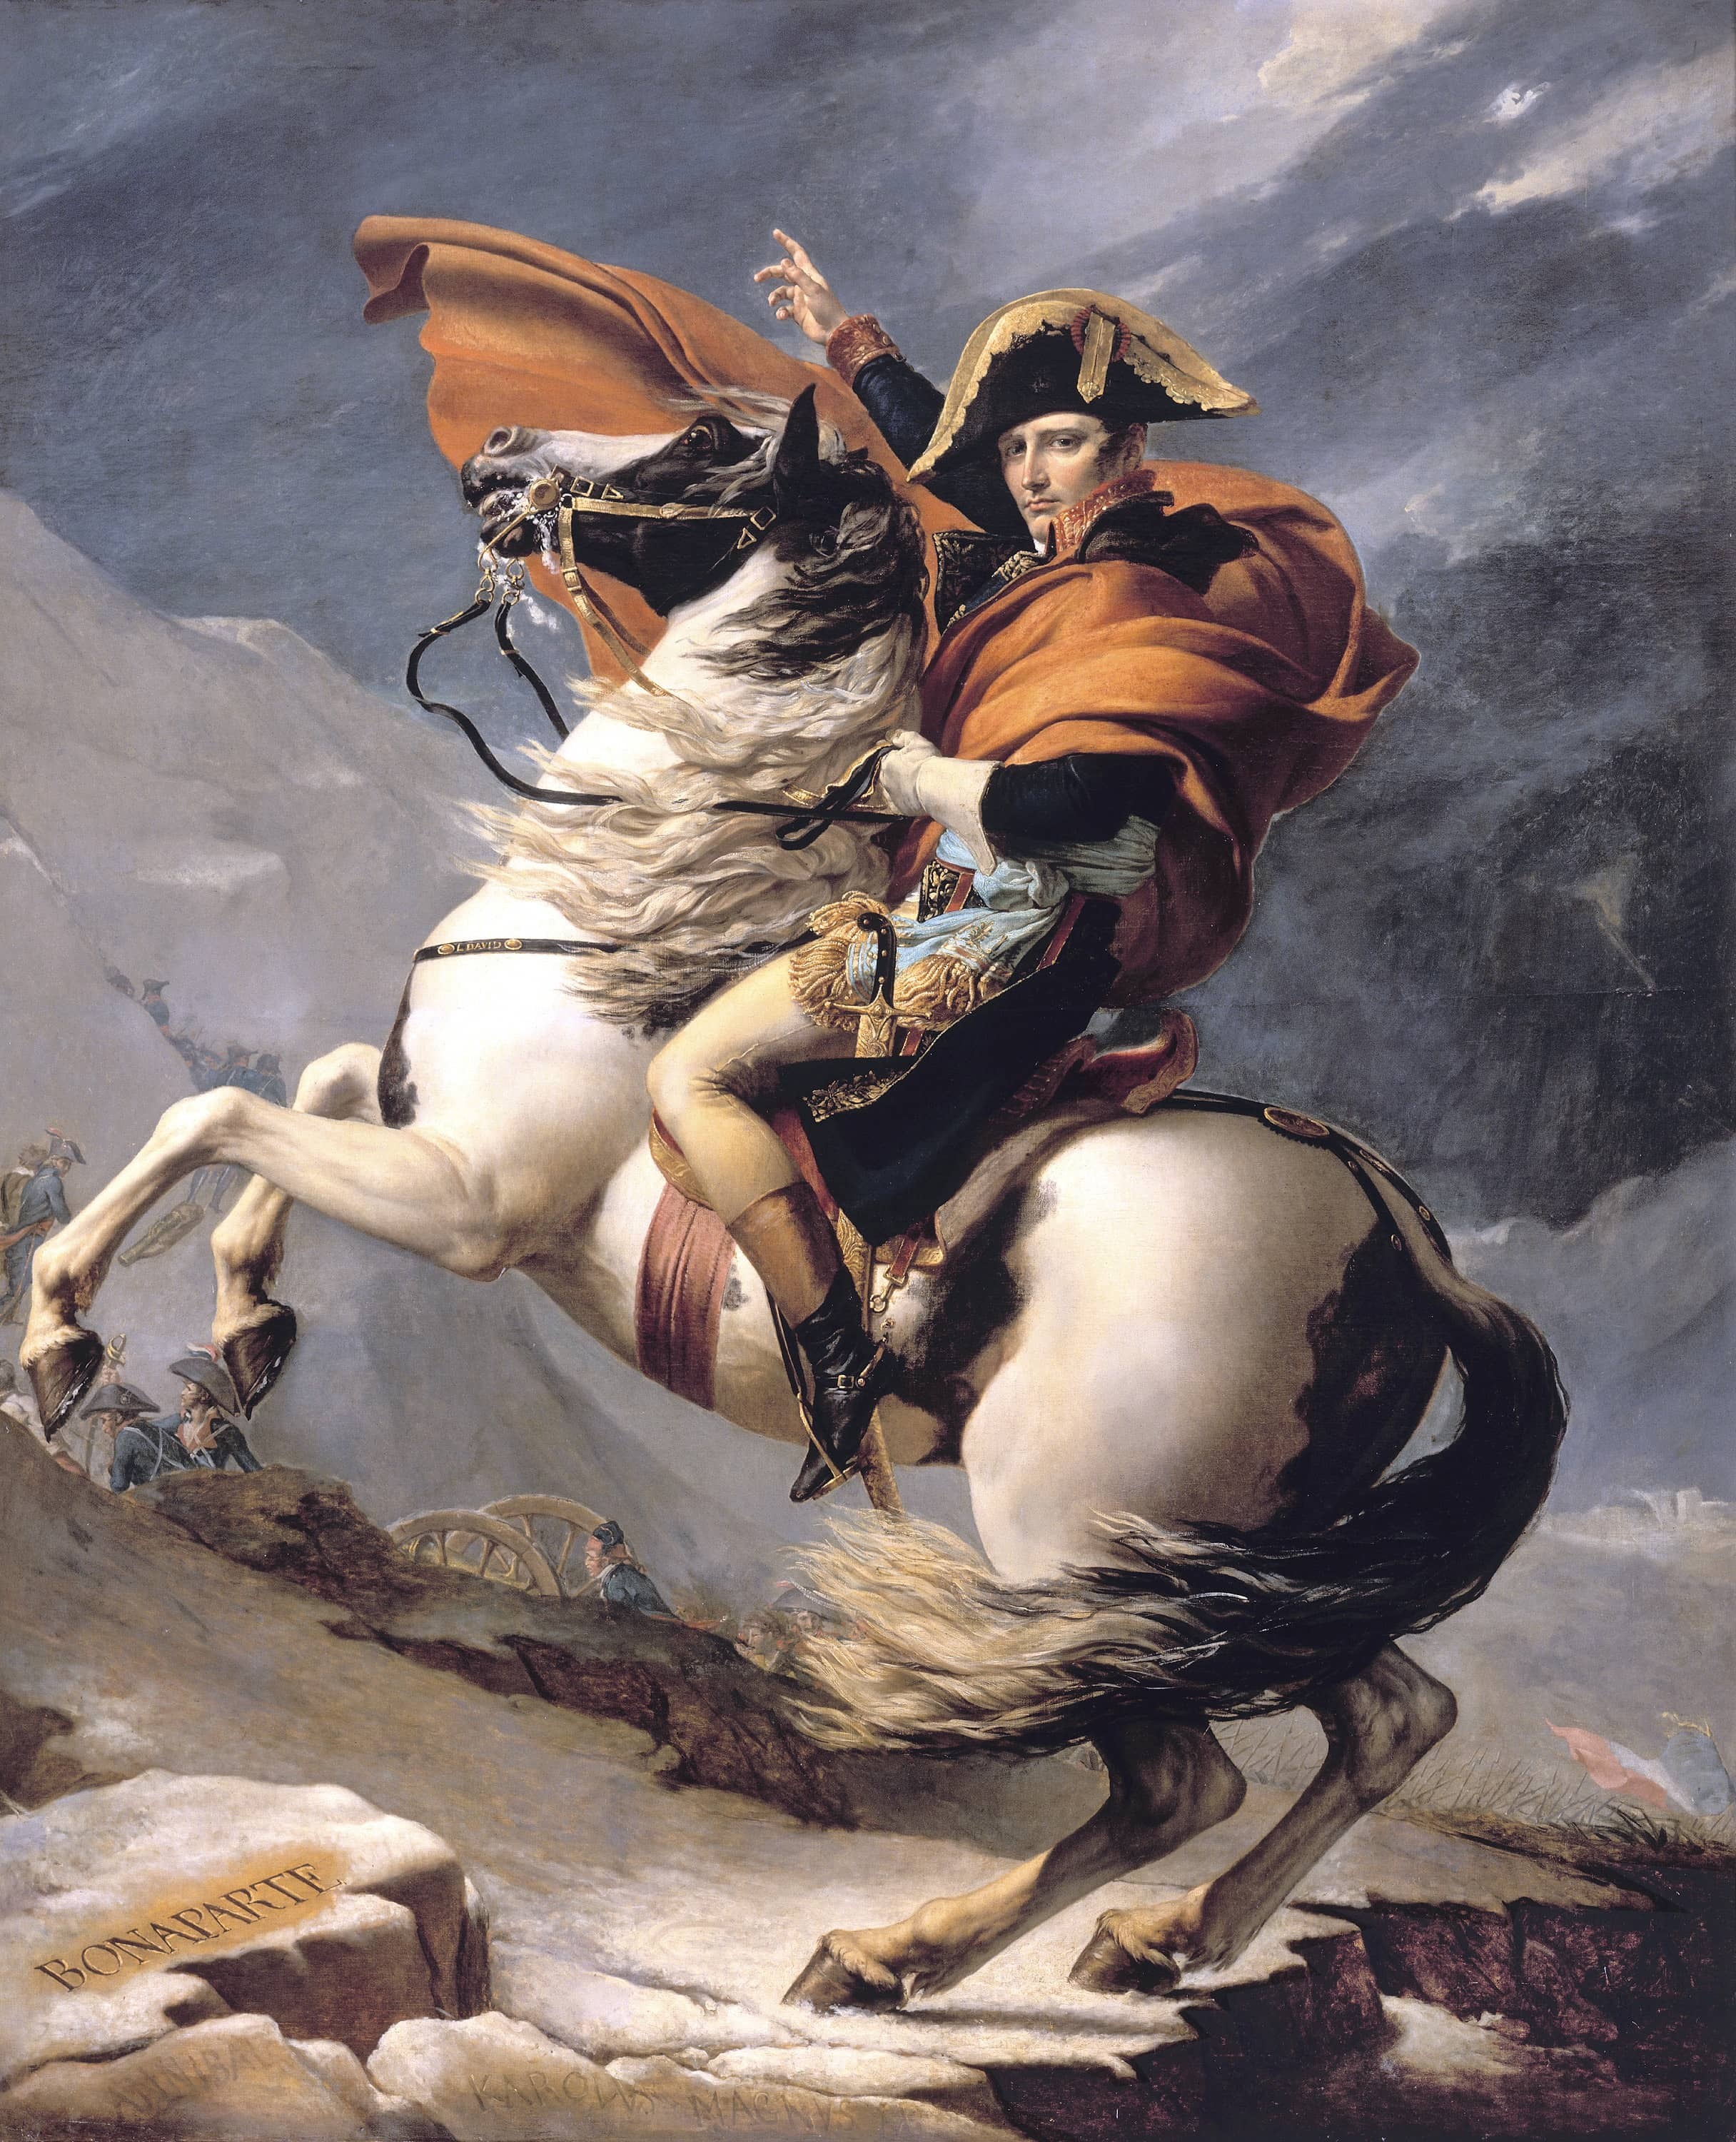 『世界名画』达维《拿破仑越过阿尔卑斯山》,绘画史上珍贵的典范